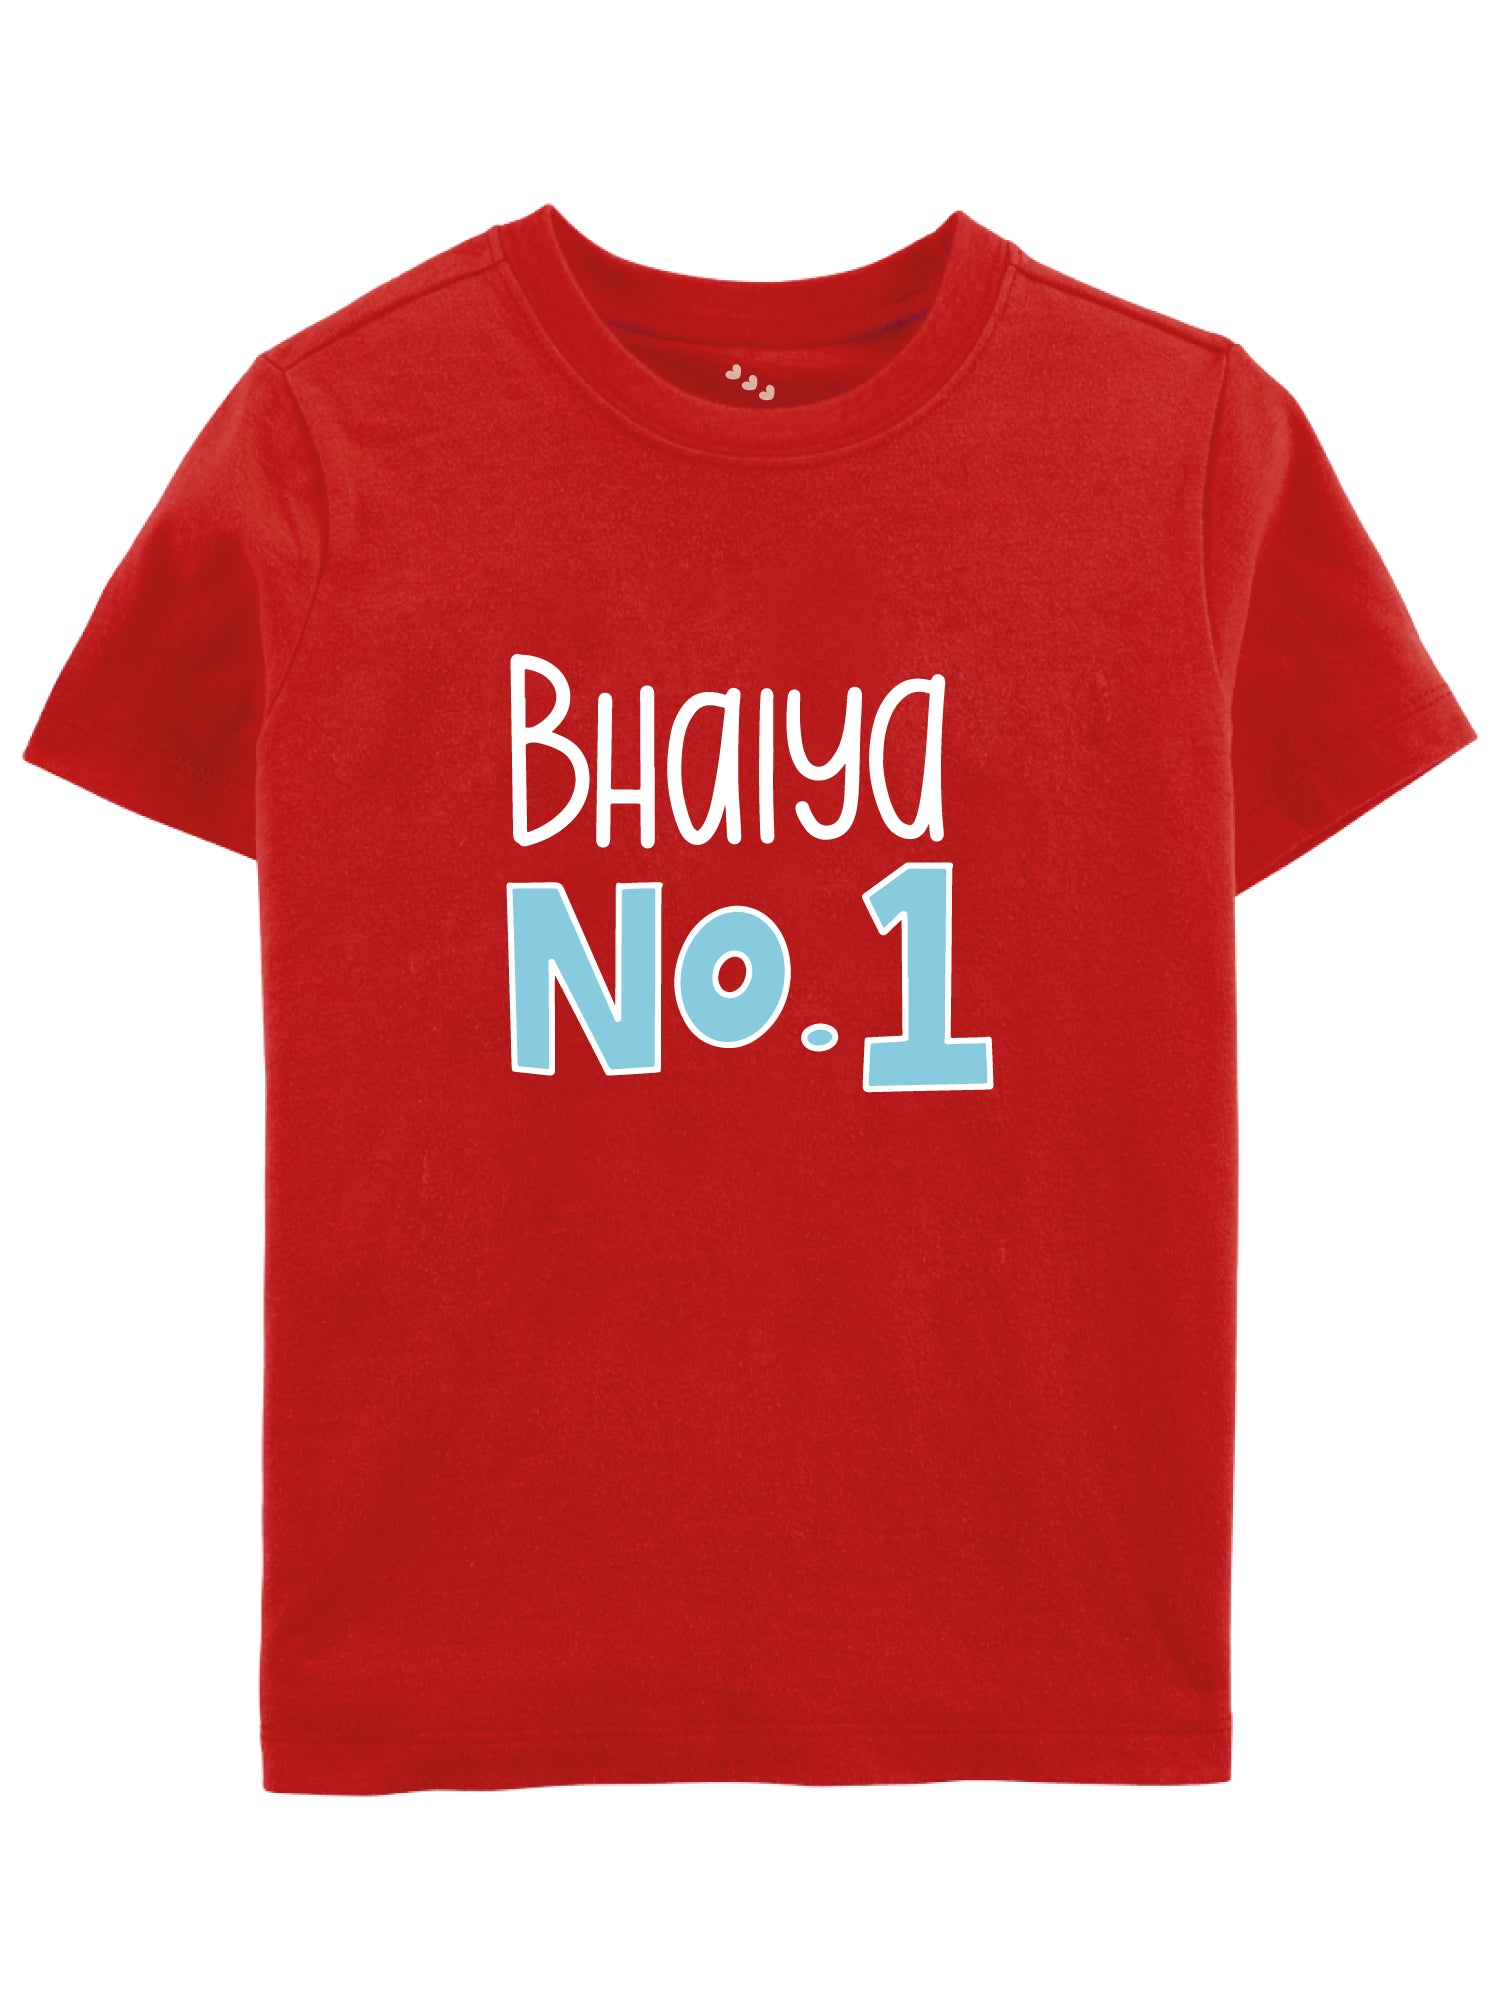 Bhaiya No 1 - Tee